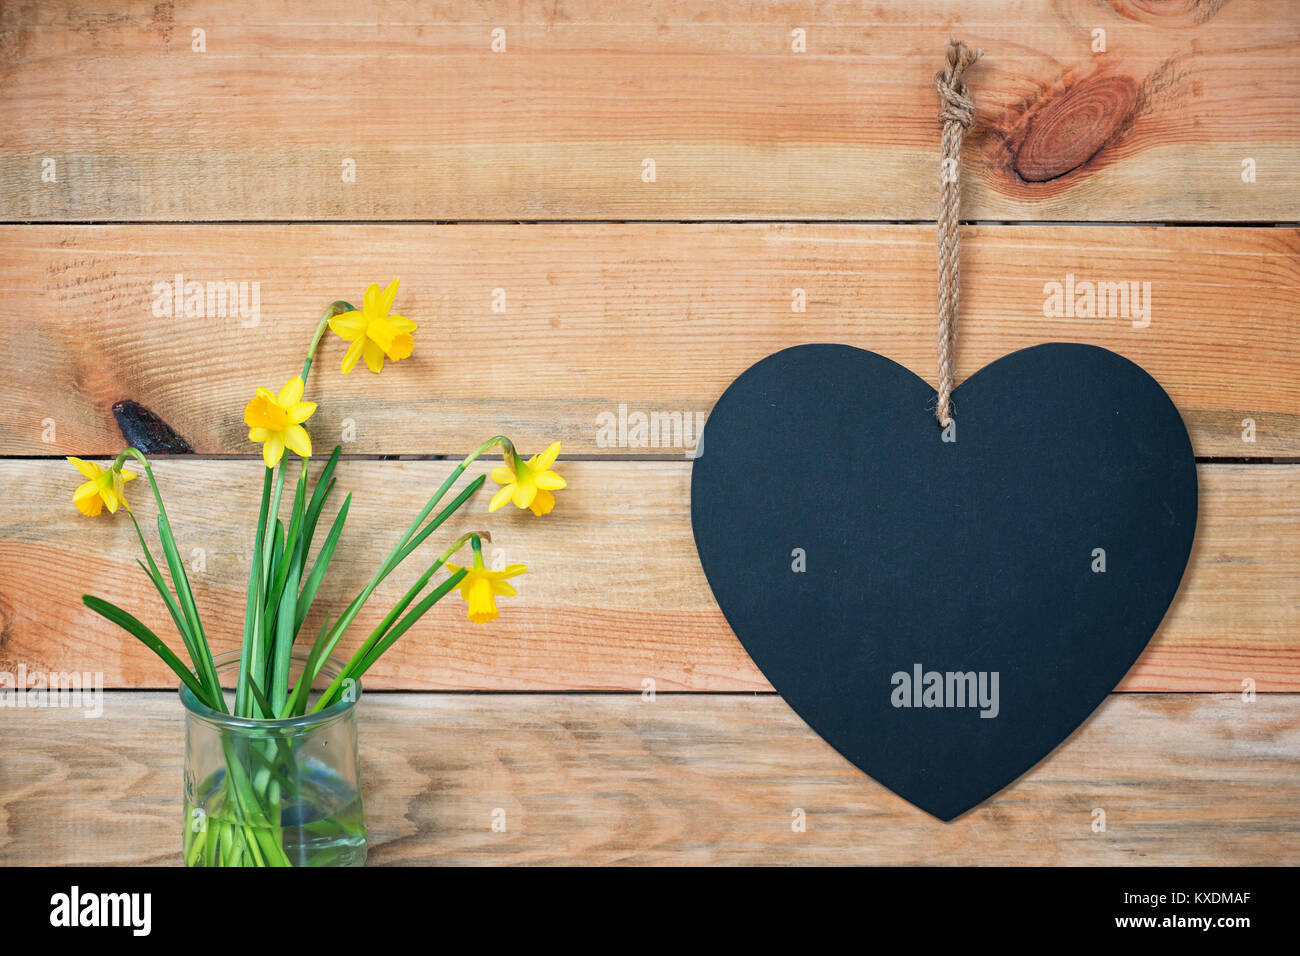 Planches, jonquilles et une ardoise en forme de coeur, l'amour de fond de carte de vœux avec copie espace pour le texte Banque D'Images